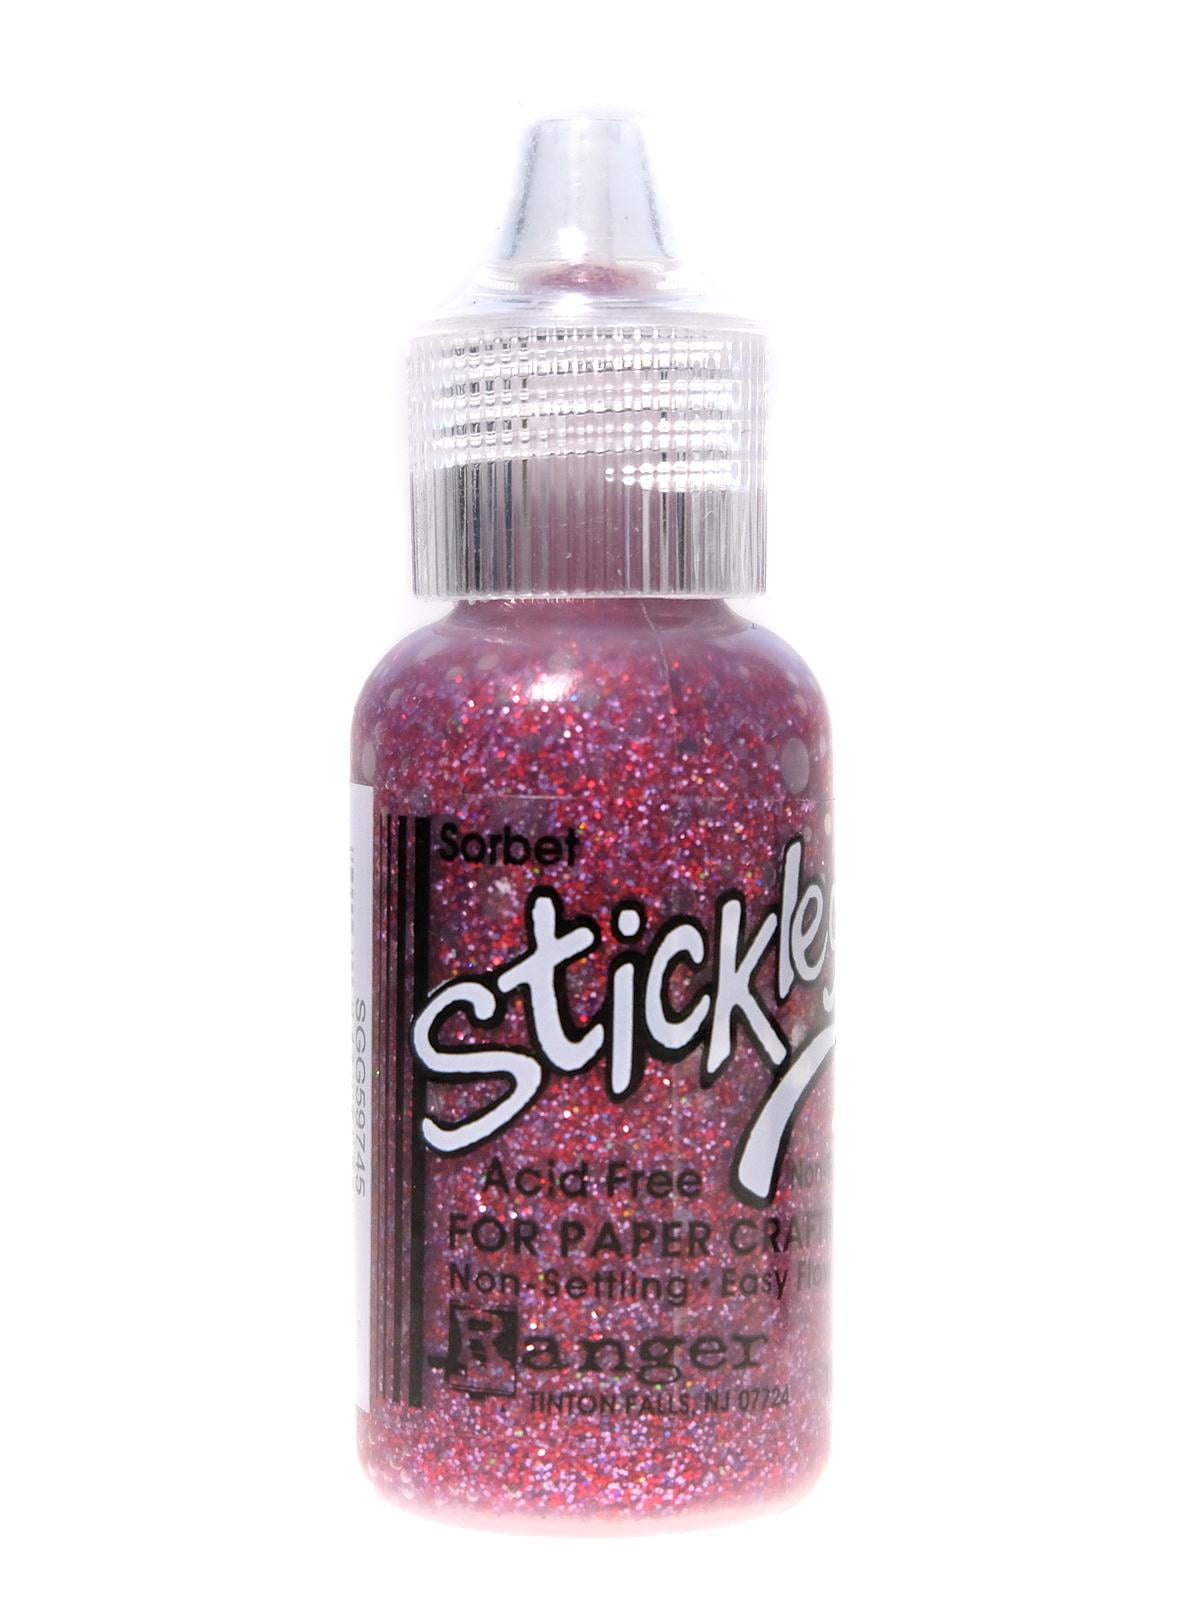 Stickles Glitter Glue-3 pack